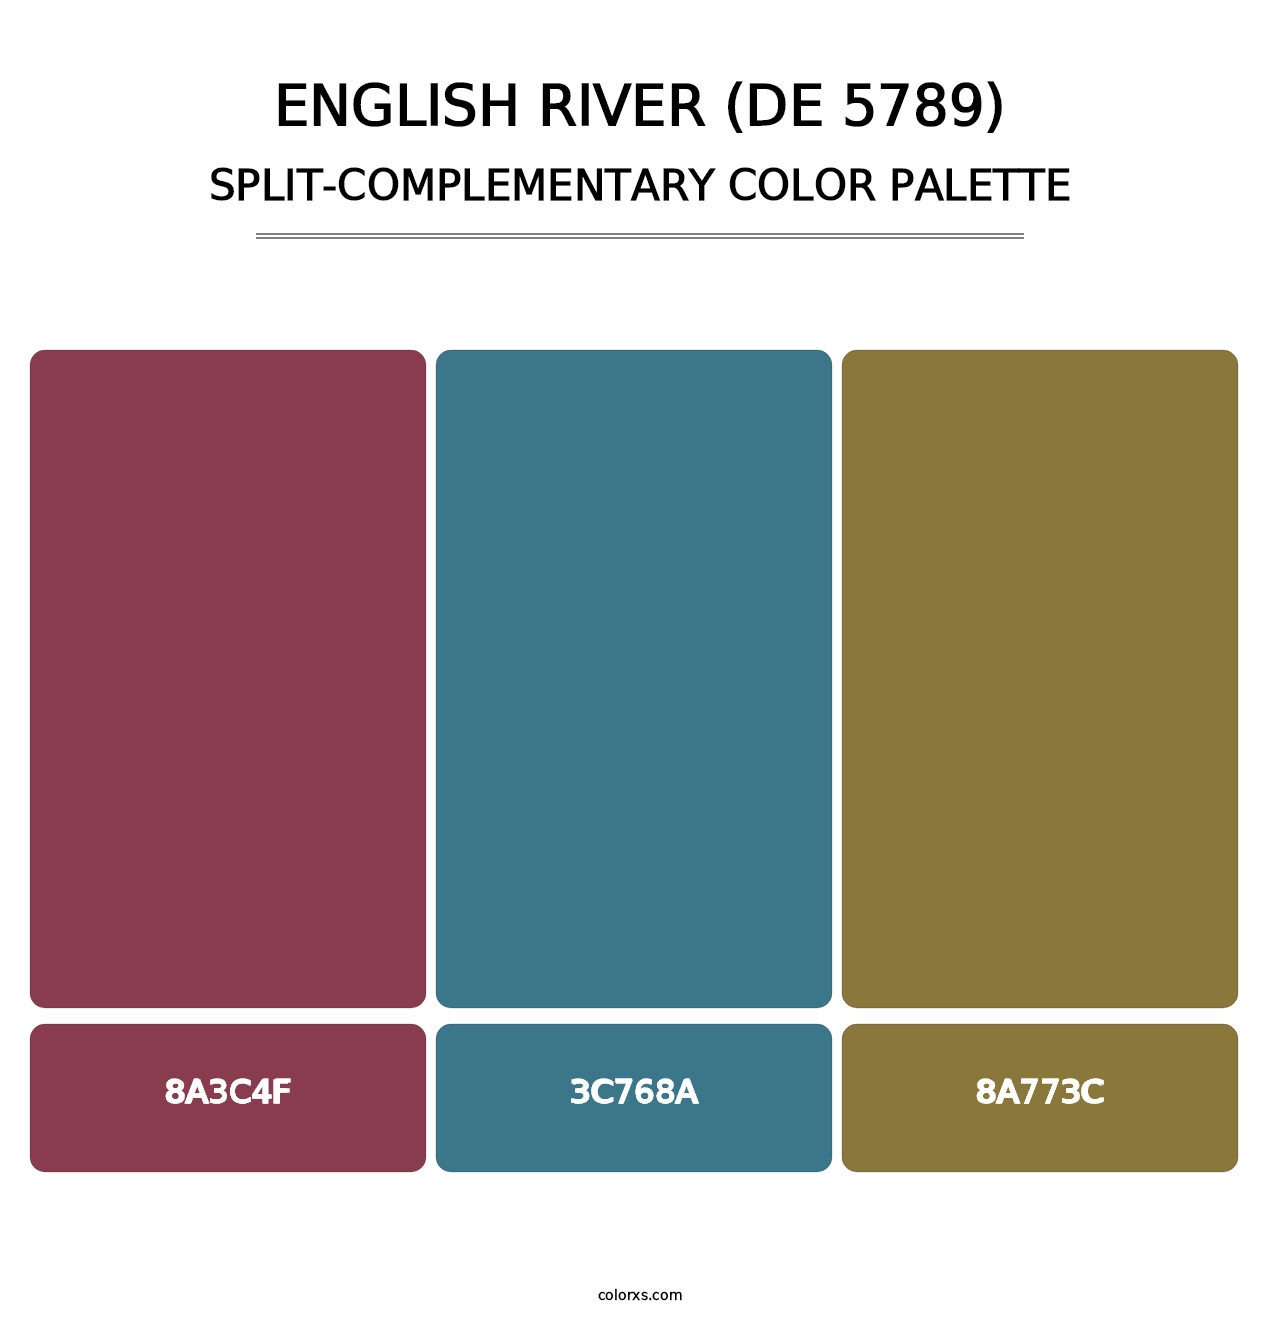 English River (DE 5789) - Split-Complementary Color Palette